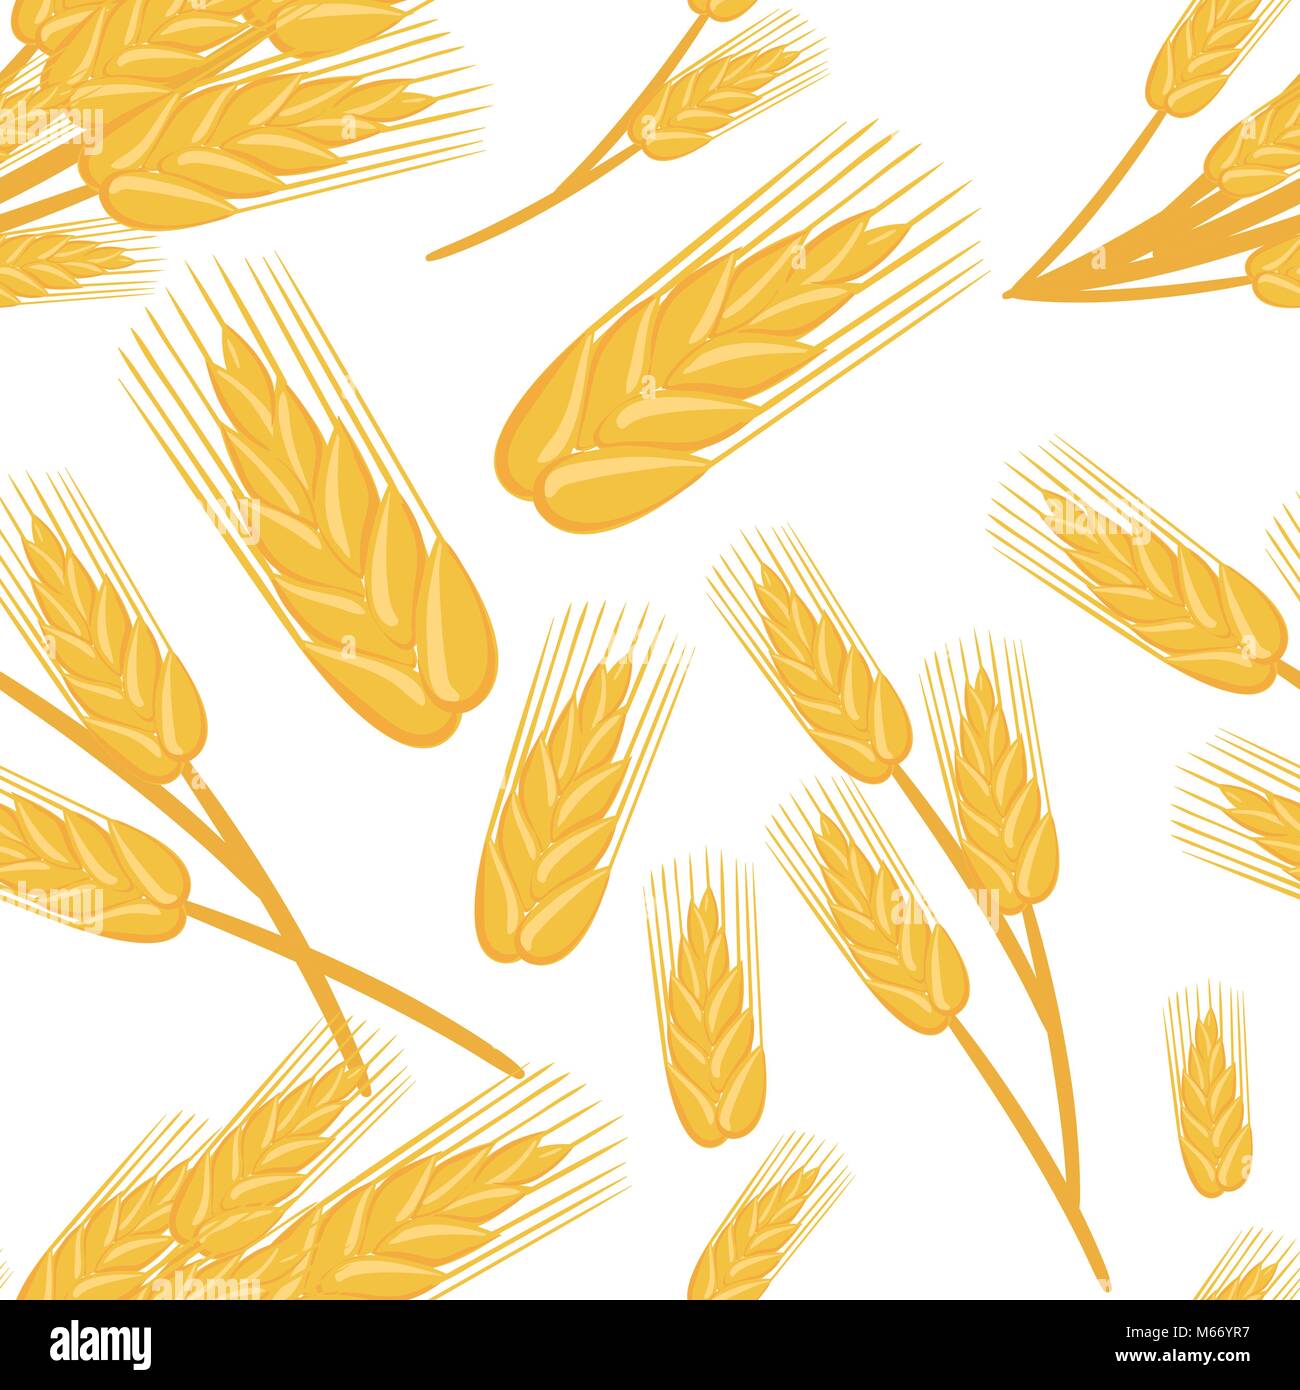 Nahtlose Muster der Trauben von Weizen Zutat für Brot backen Bio Vegetarische Kost Vector Illustration auf weißem Hintergrund Web site Seite und mobile App Design Stock Vektor